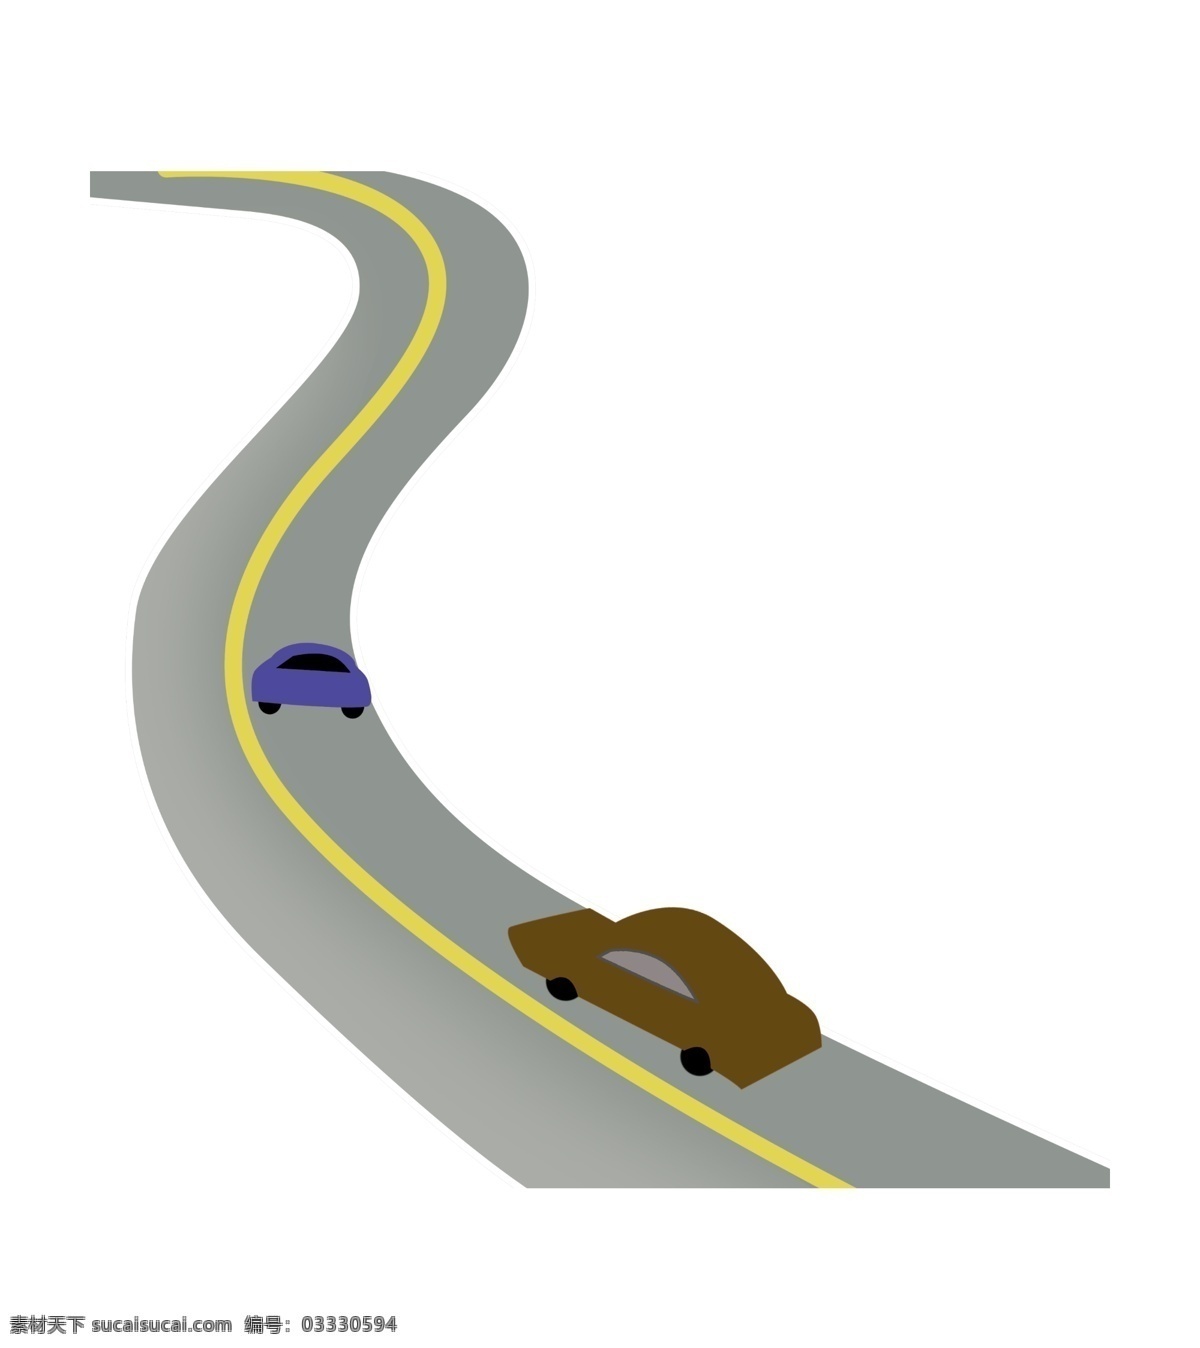 弯曲 高速公路 插画 公路 马路 柏油马路 汽车 车辆 高速 蓝色汽车 棕色汽车